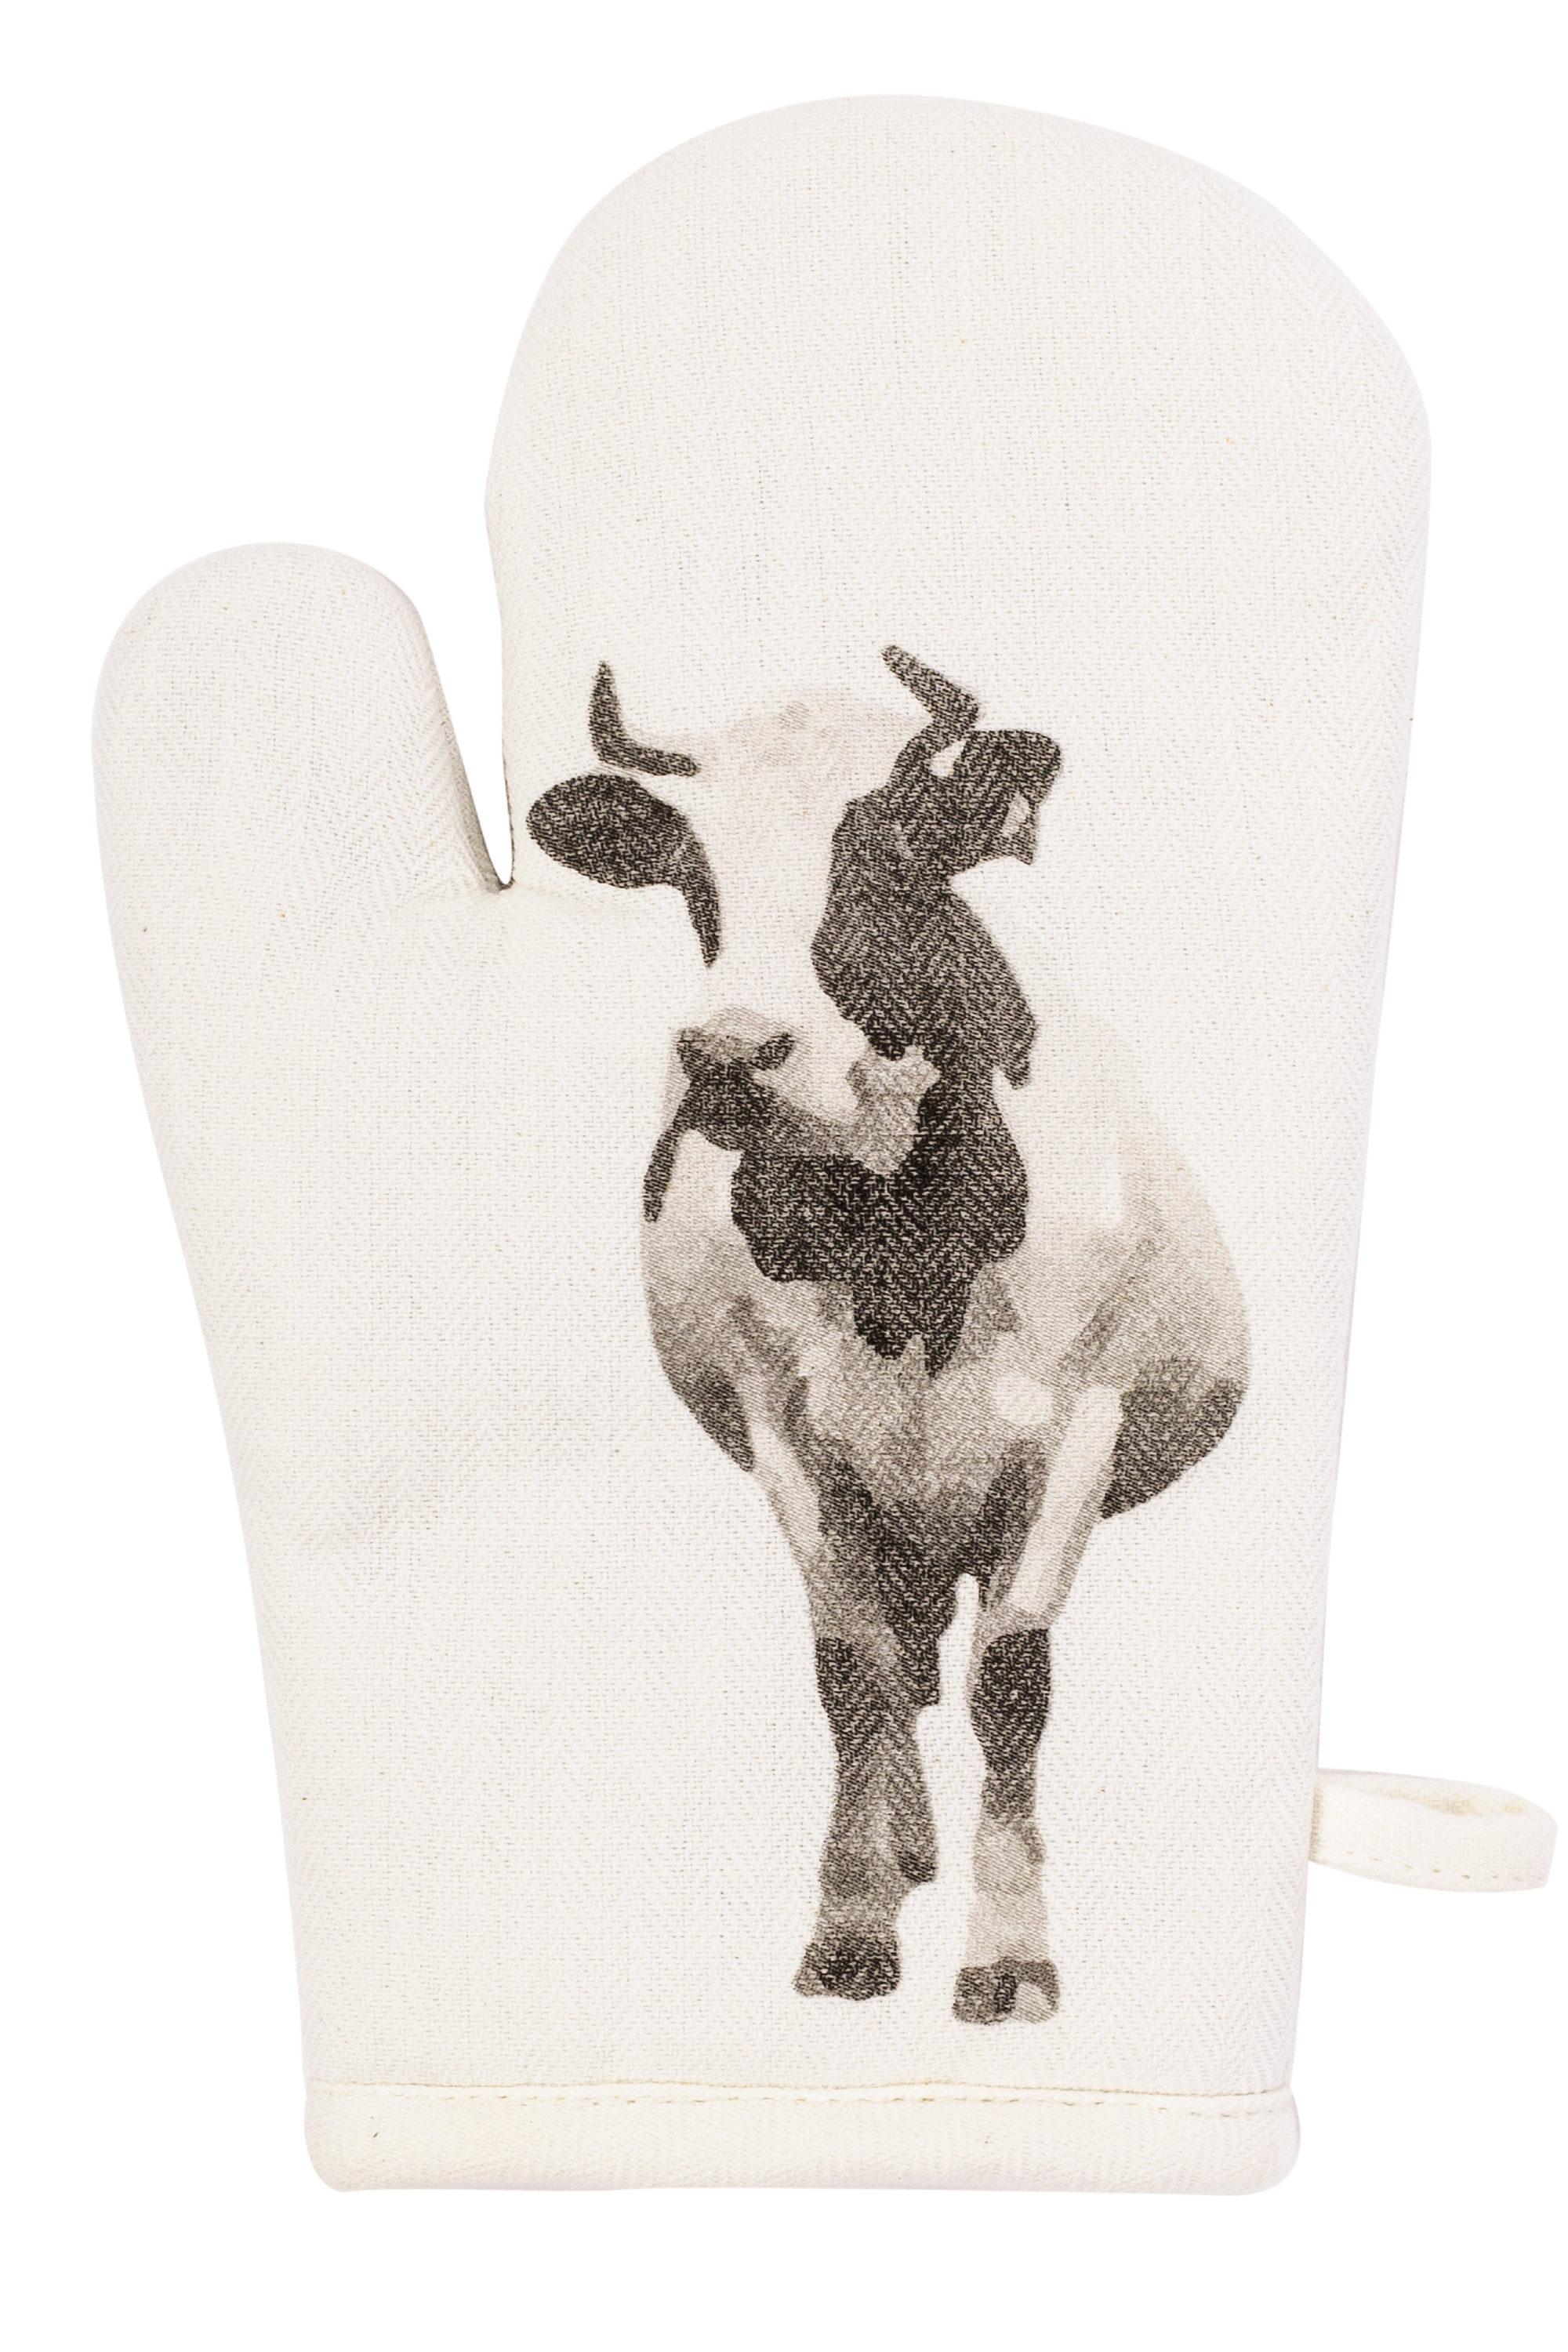 Glove FARM 18x28cm, cow